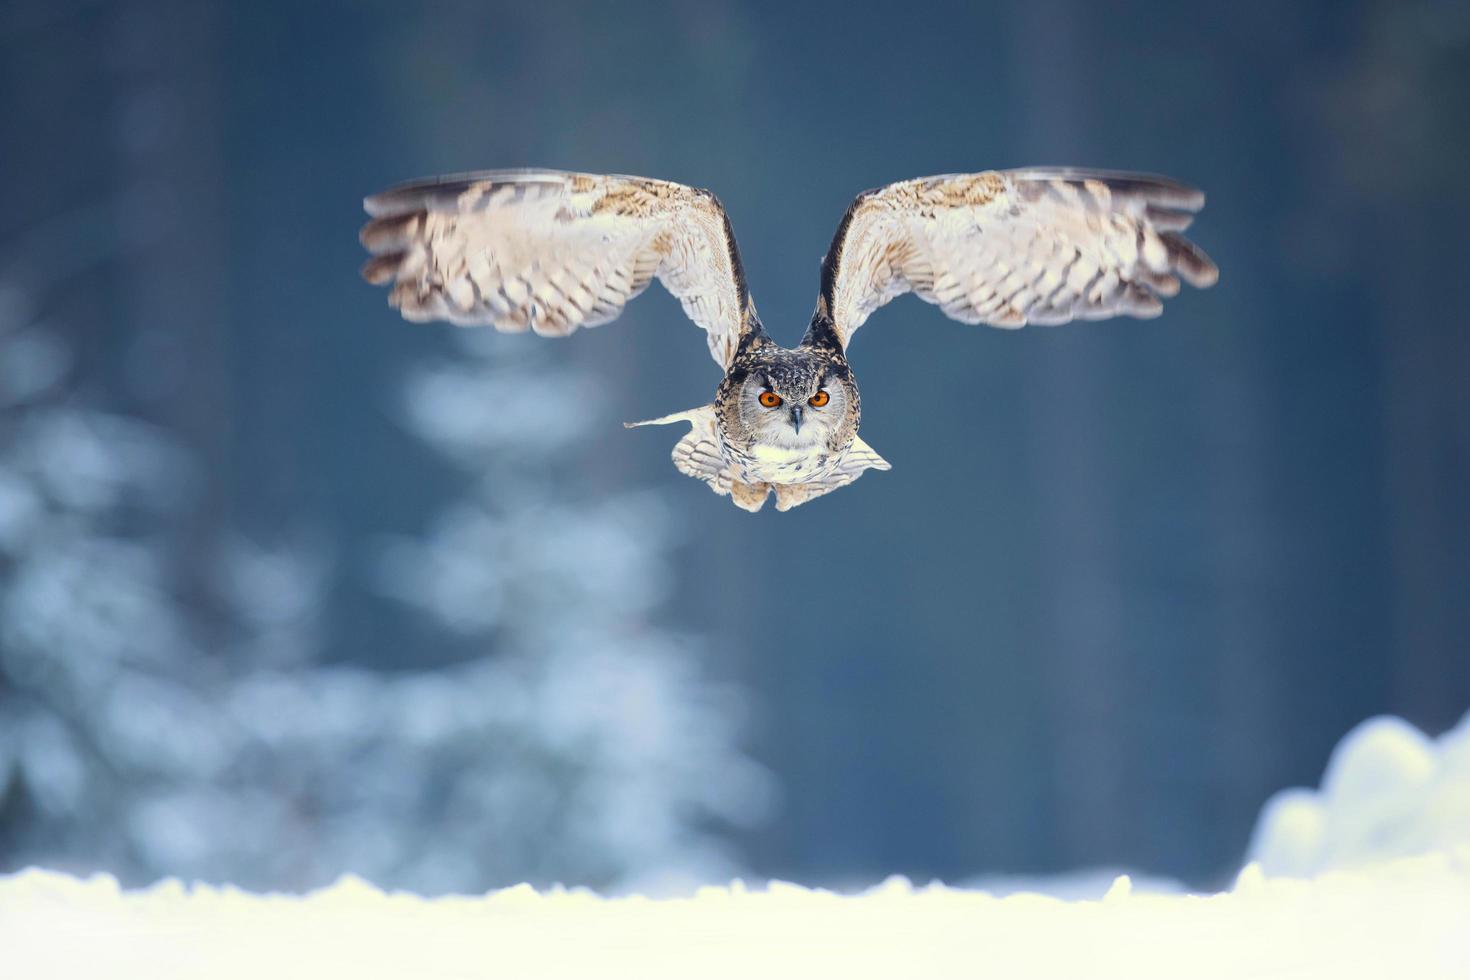 Eurasian eagle owl, Bubo Bubo photo